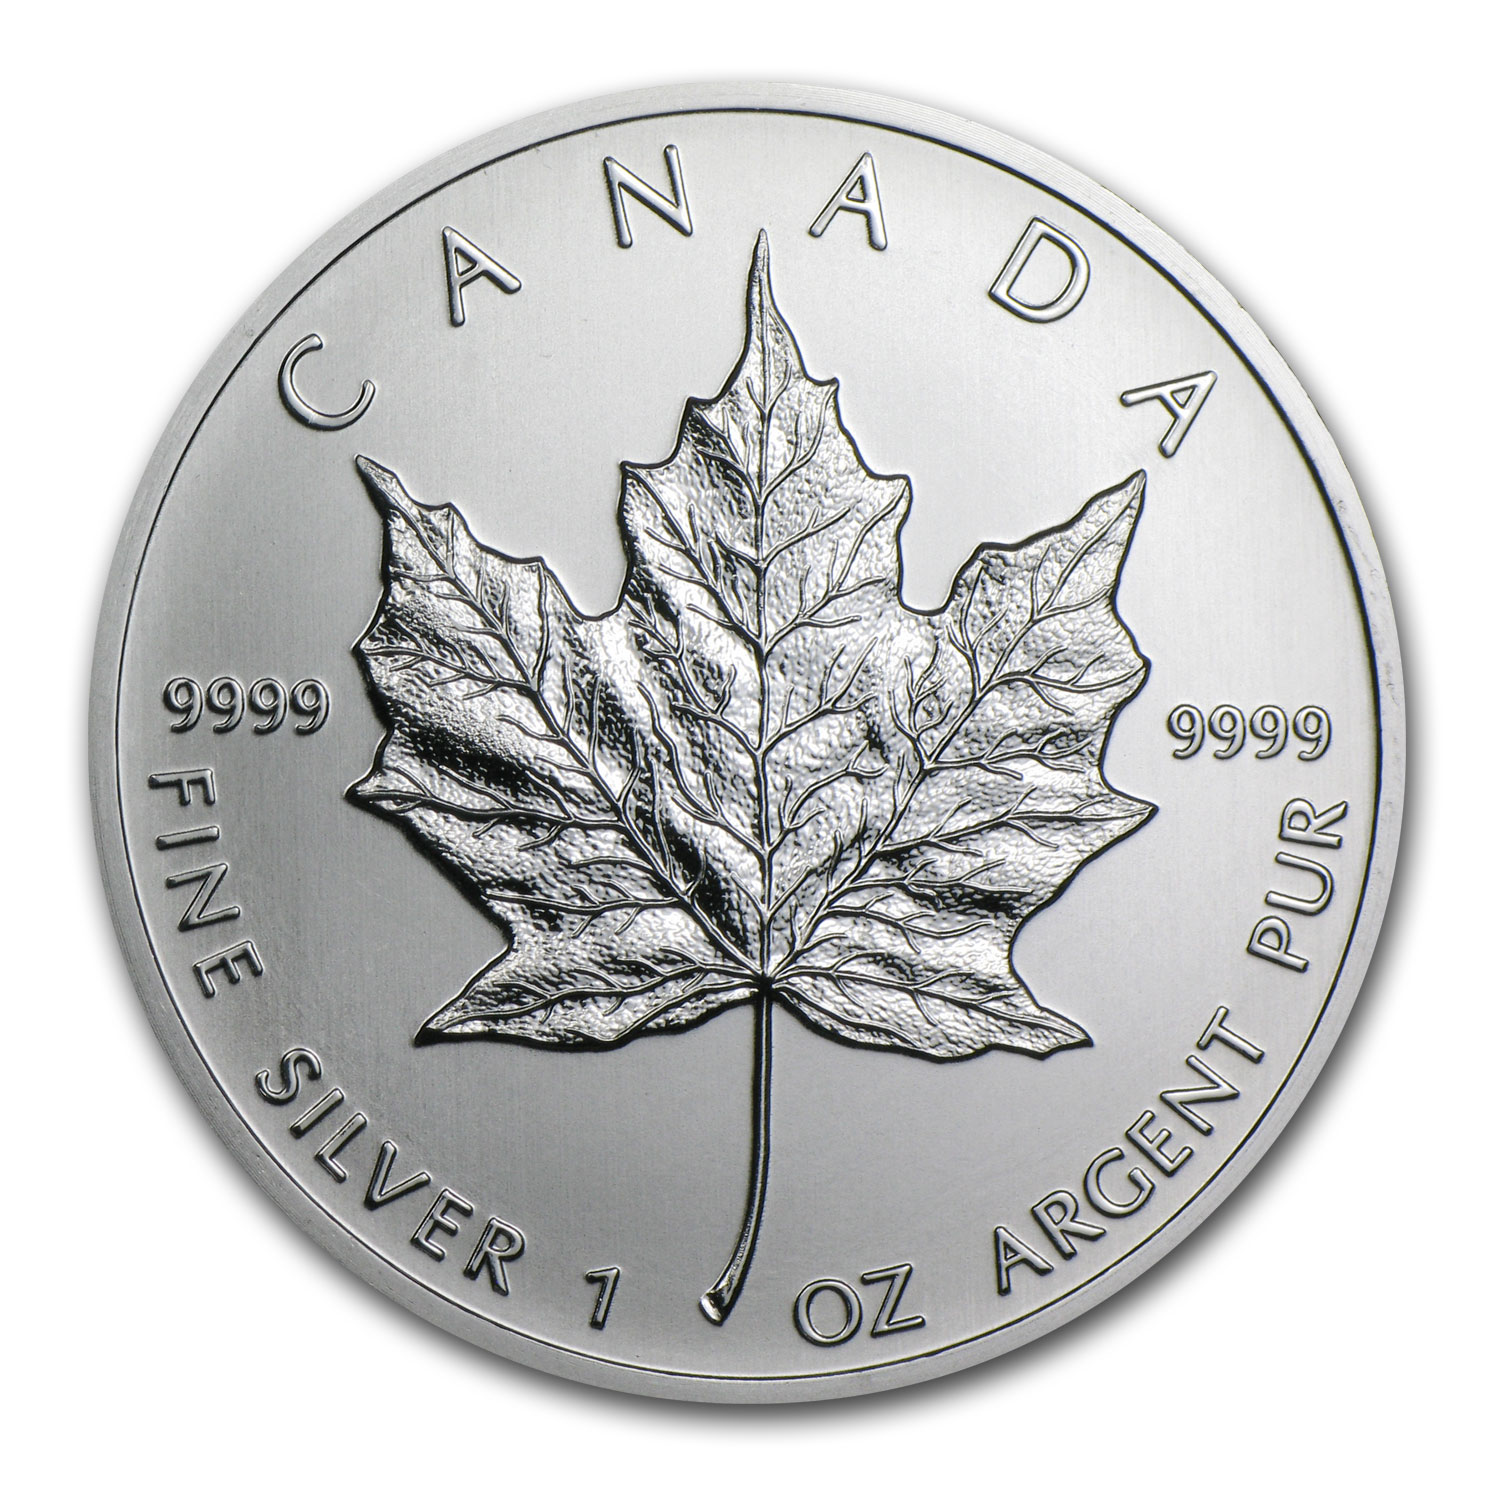 Buy 2001 Canada 1 oz Silver Maple Leaf BU